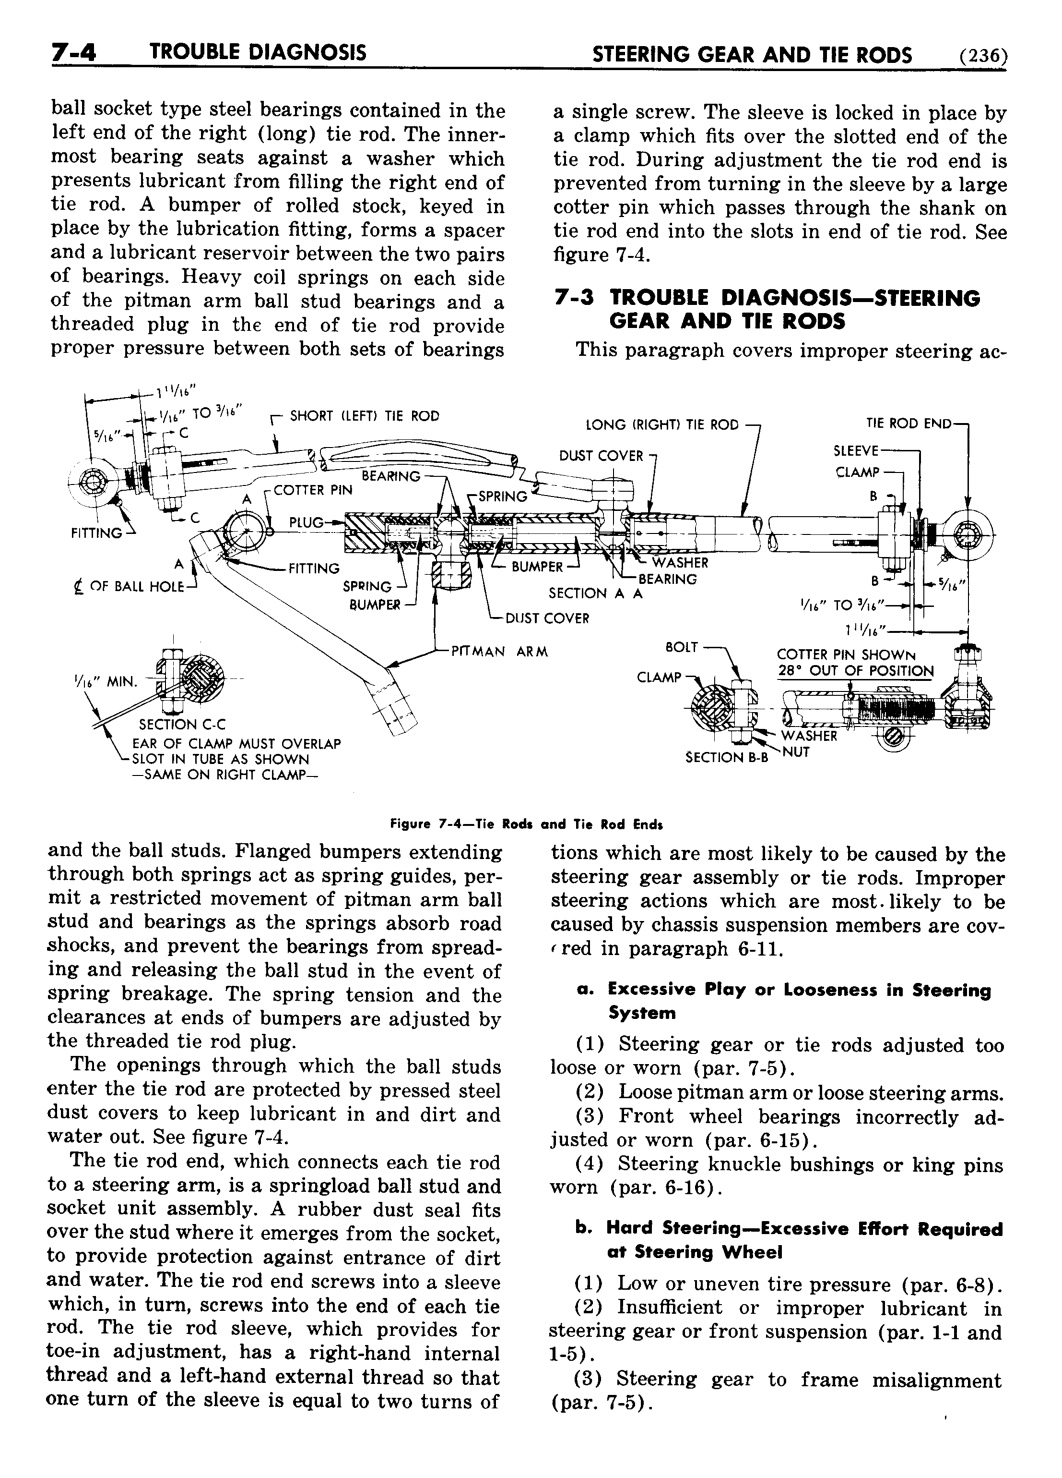 n_08 1948 Buick Shop Manual - Steering-004-004.jpg